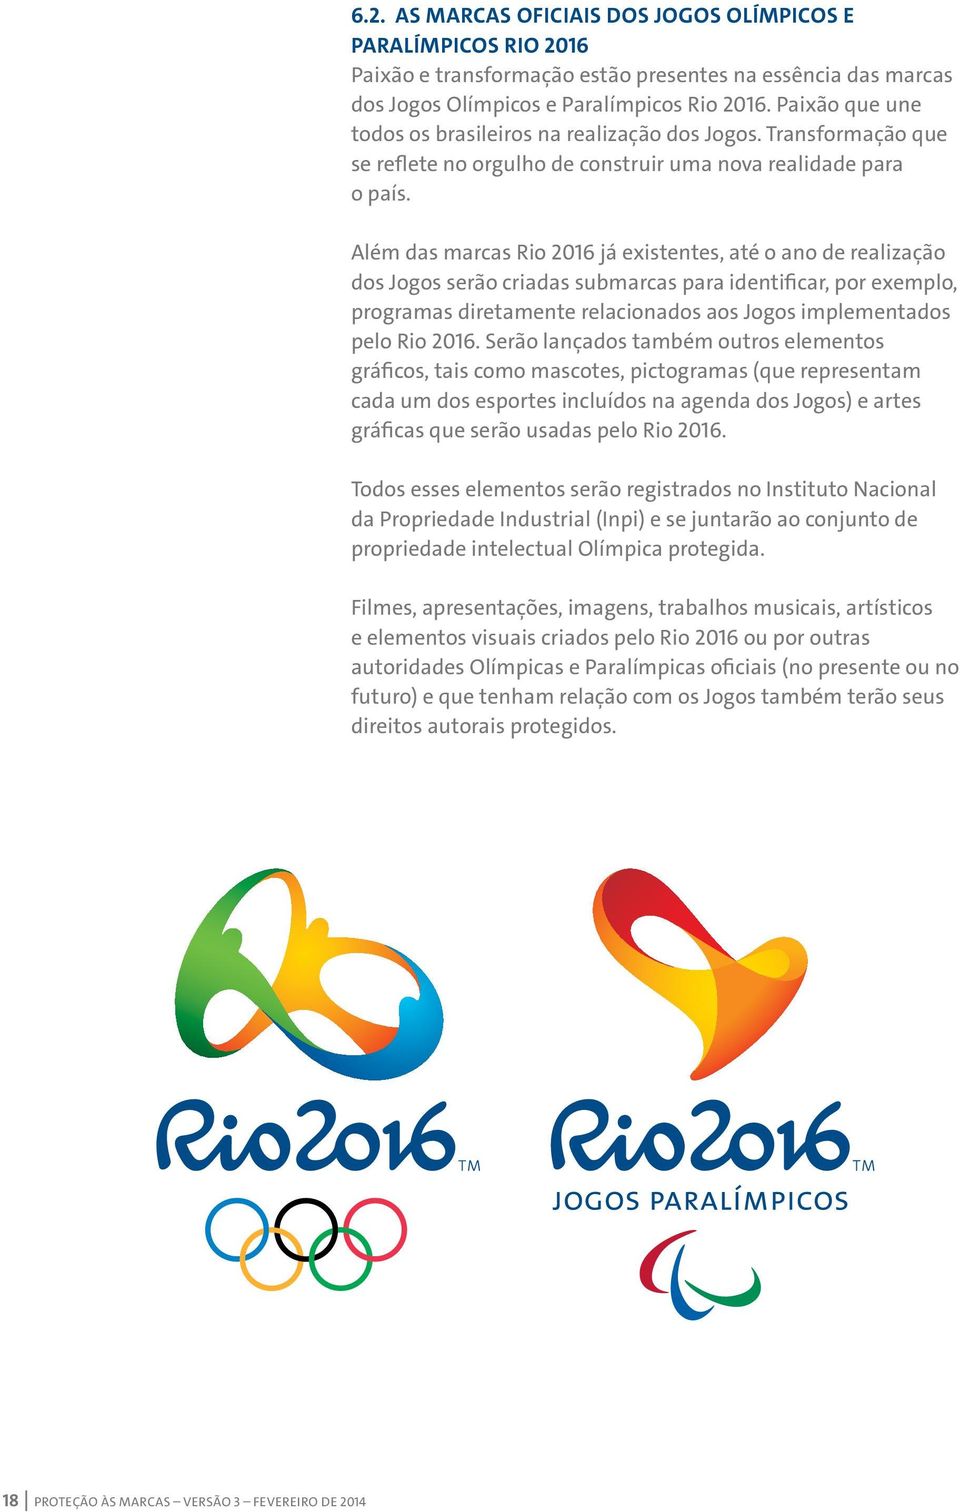 Além das marcas Rio 2016 já existentes, até o ano de realização dos Jogos serão criadas submarcas para identificar, por exemplo, programas diretamente relacionados aos Jogos implementados pelo Rio